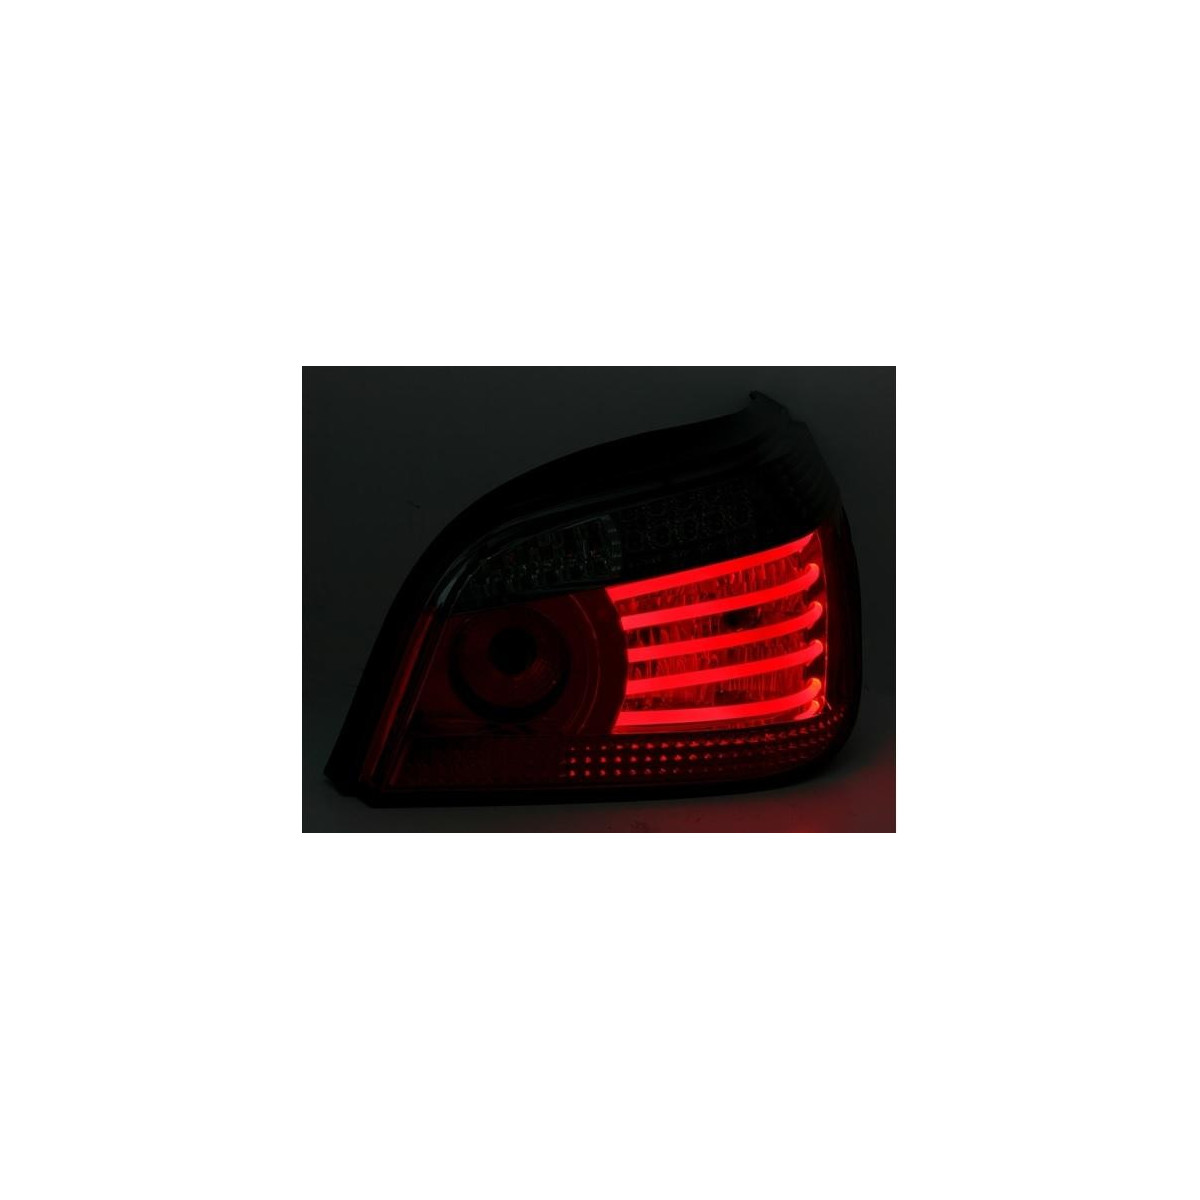 LAMPY DIODOWE BMW E60 07/03-07 R/W LED